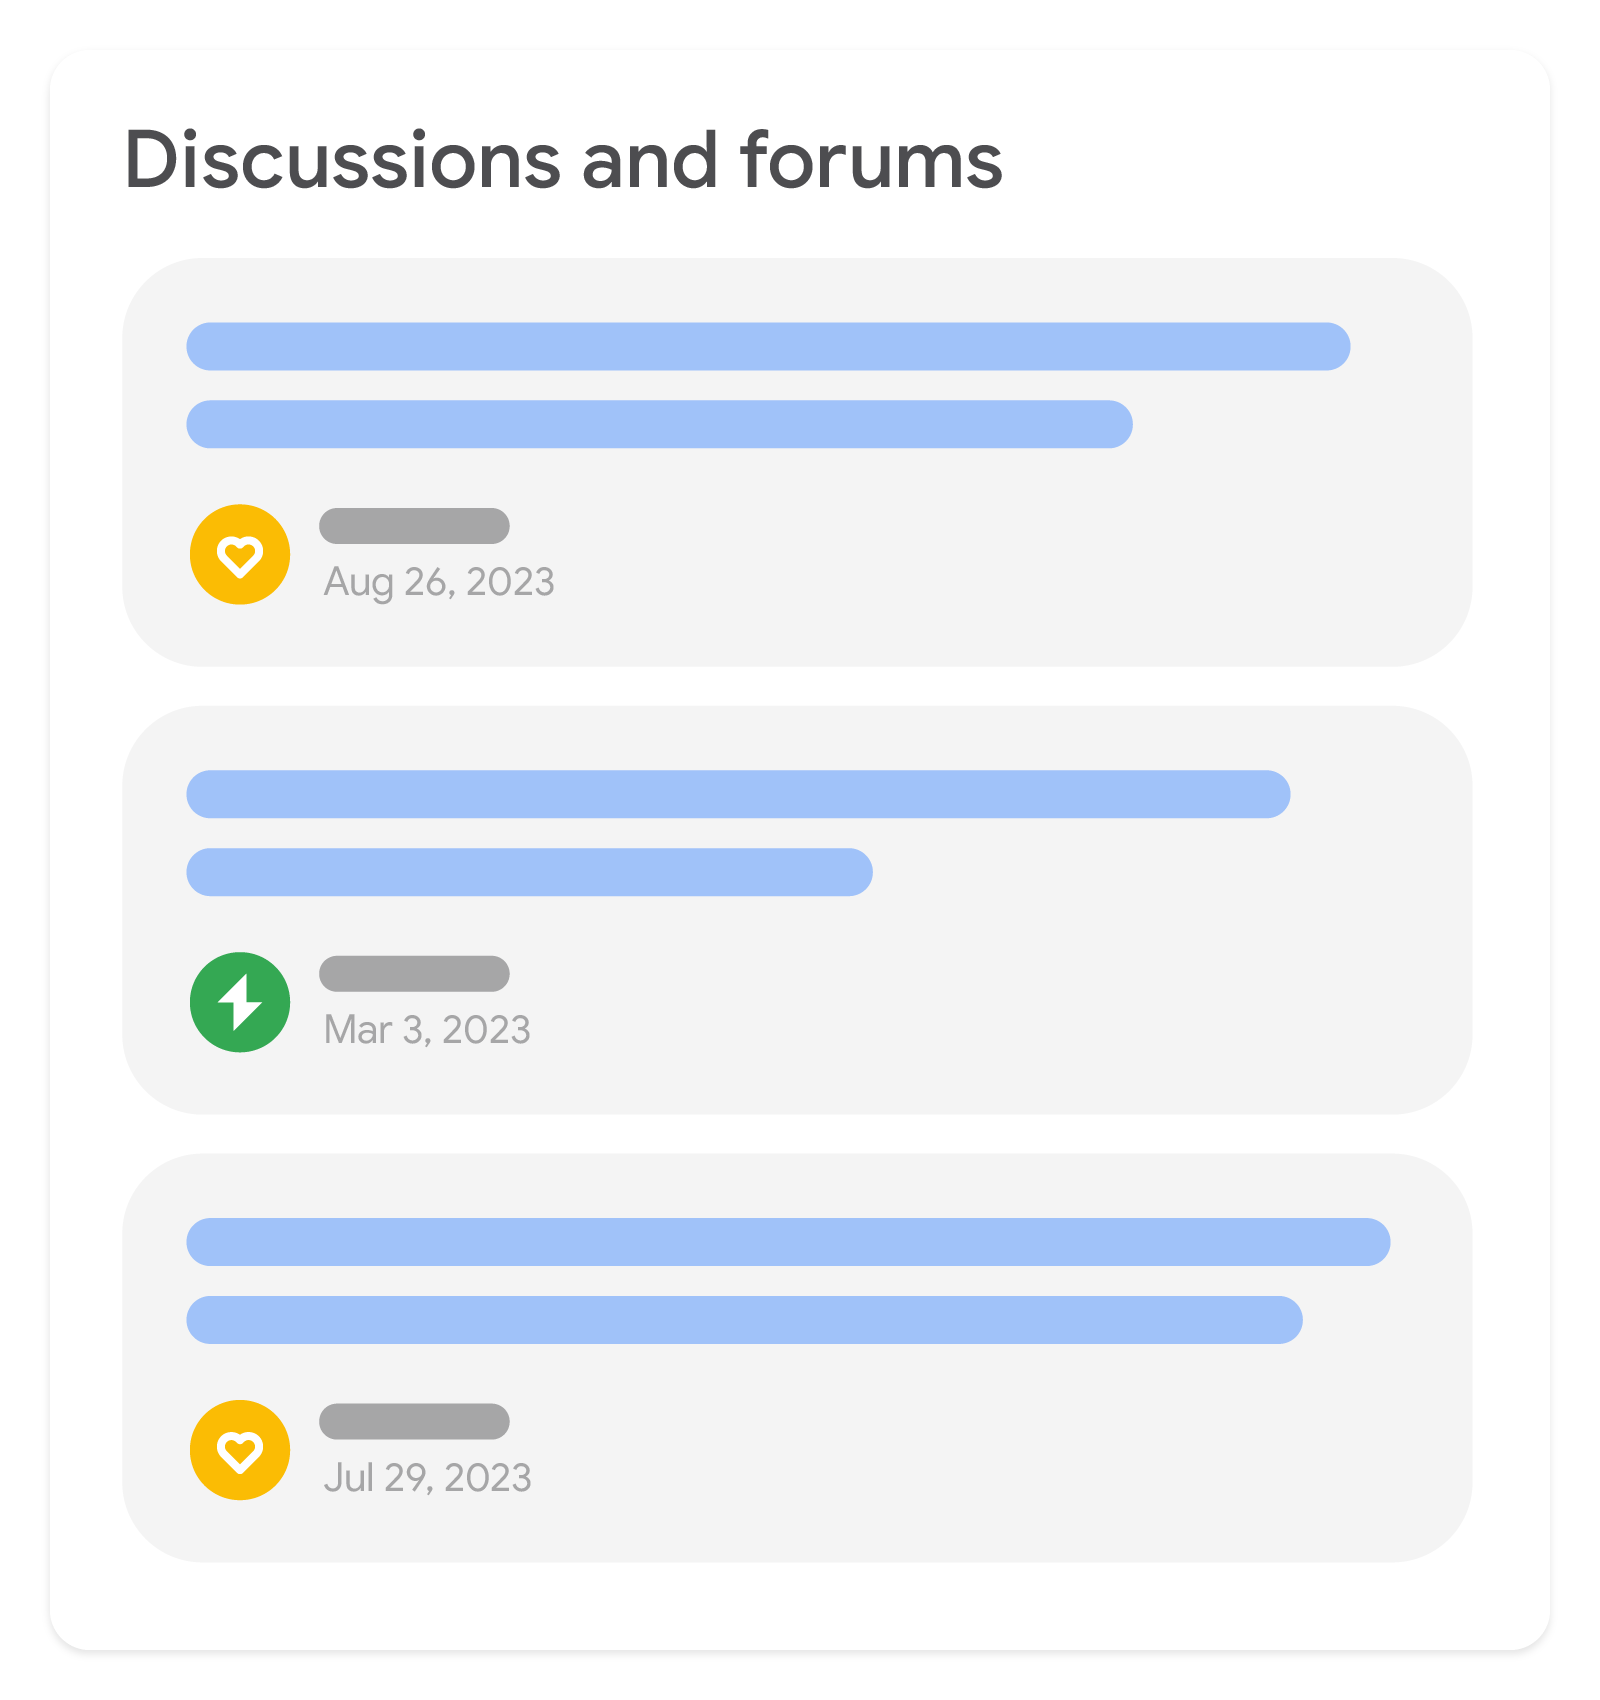 Ilustração do recurso de discussões e fóruns